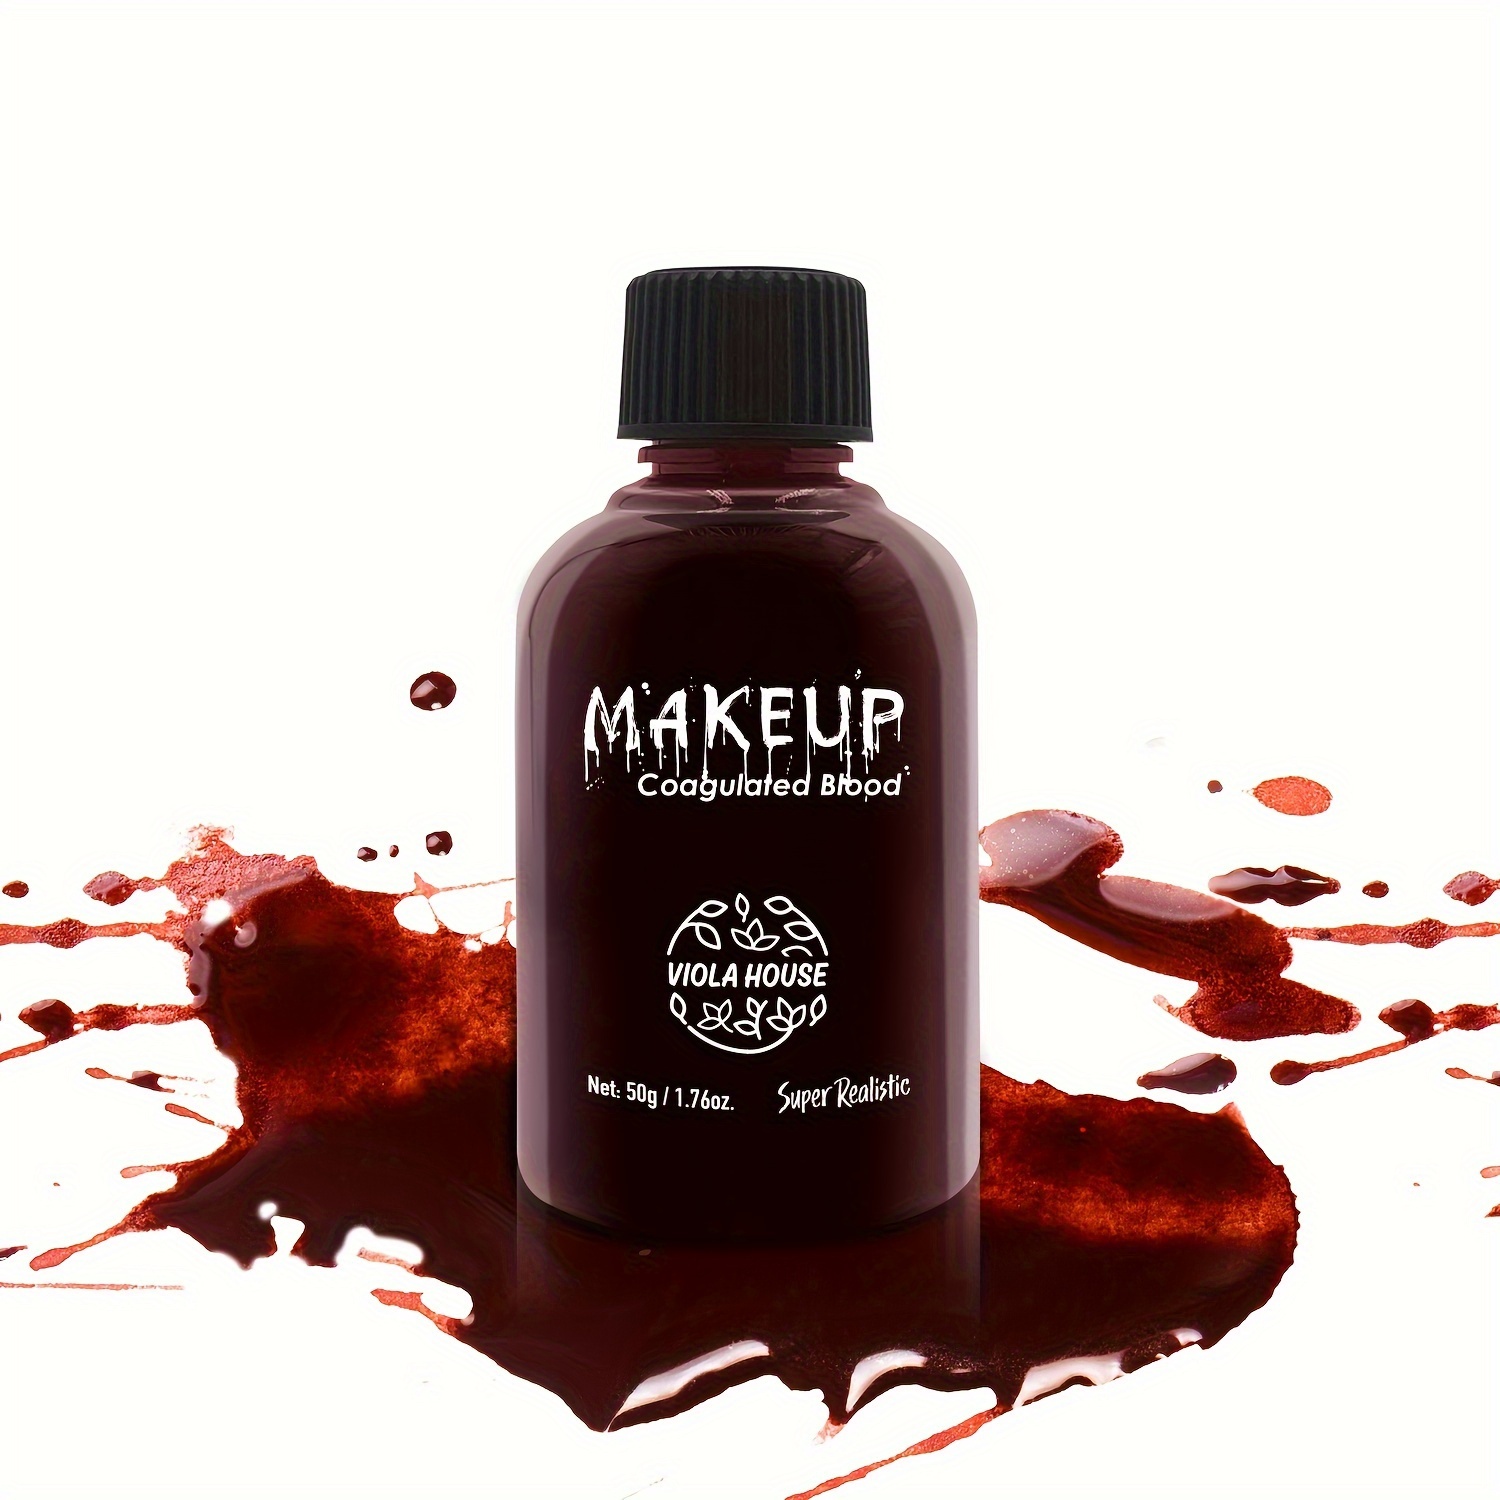 SFX Makeup Kit Skin Wax Plasma Makeup Set Scar Makeup Creepy Party Makeup  Props Halloween Fake Blood Costume